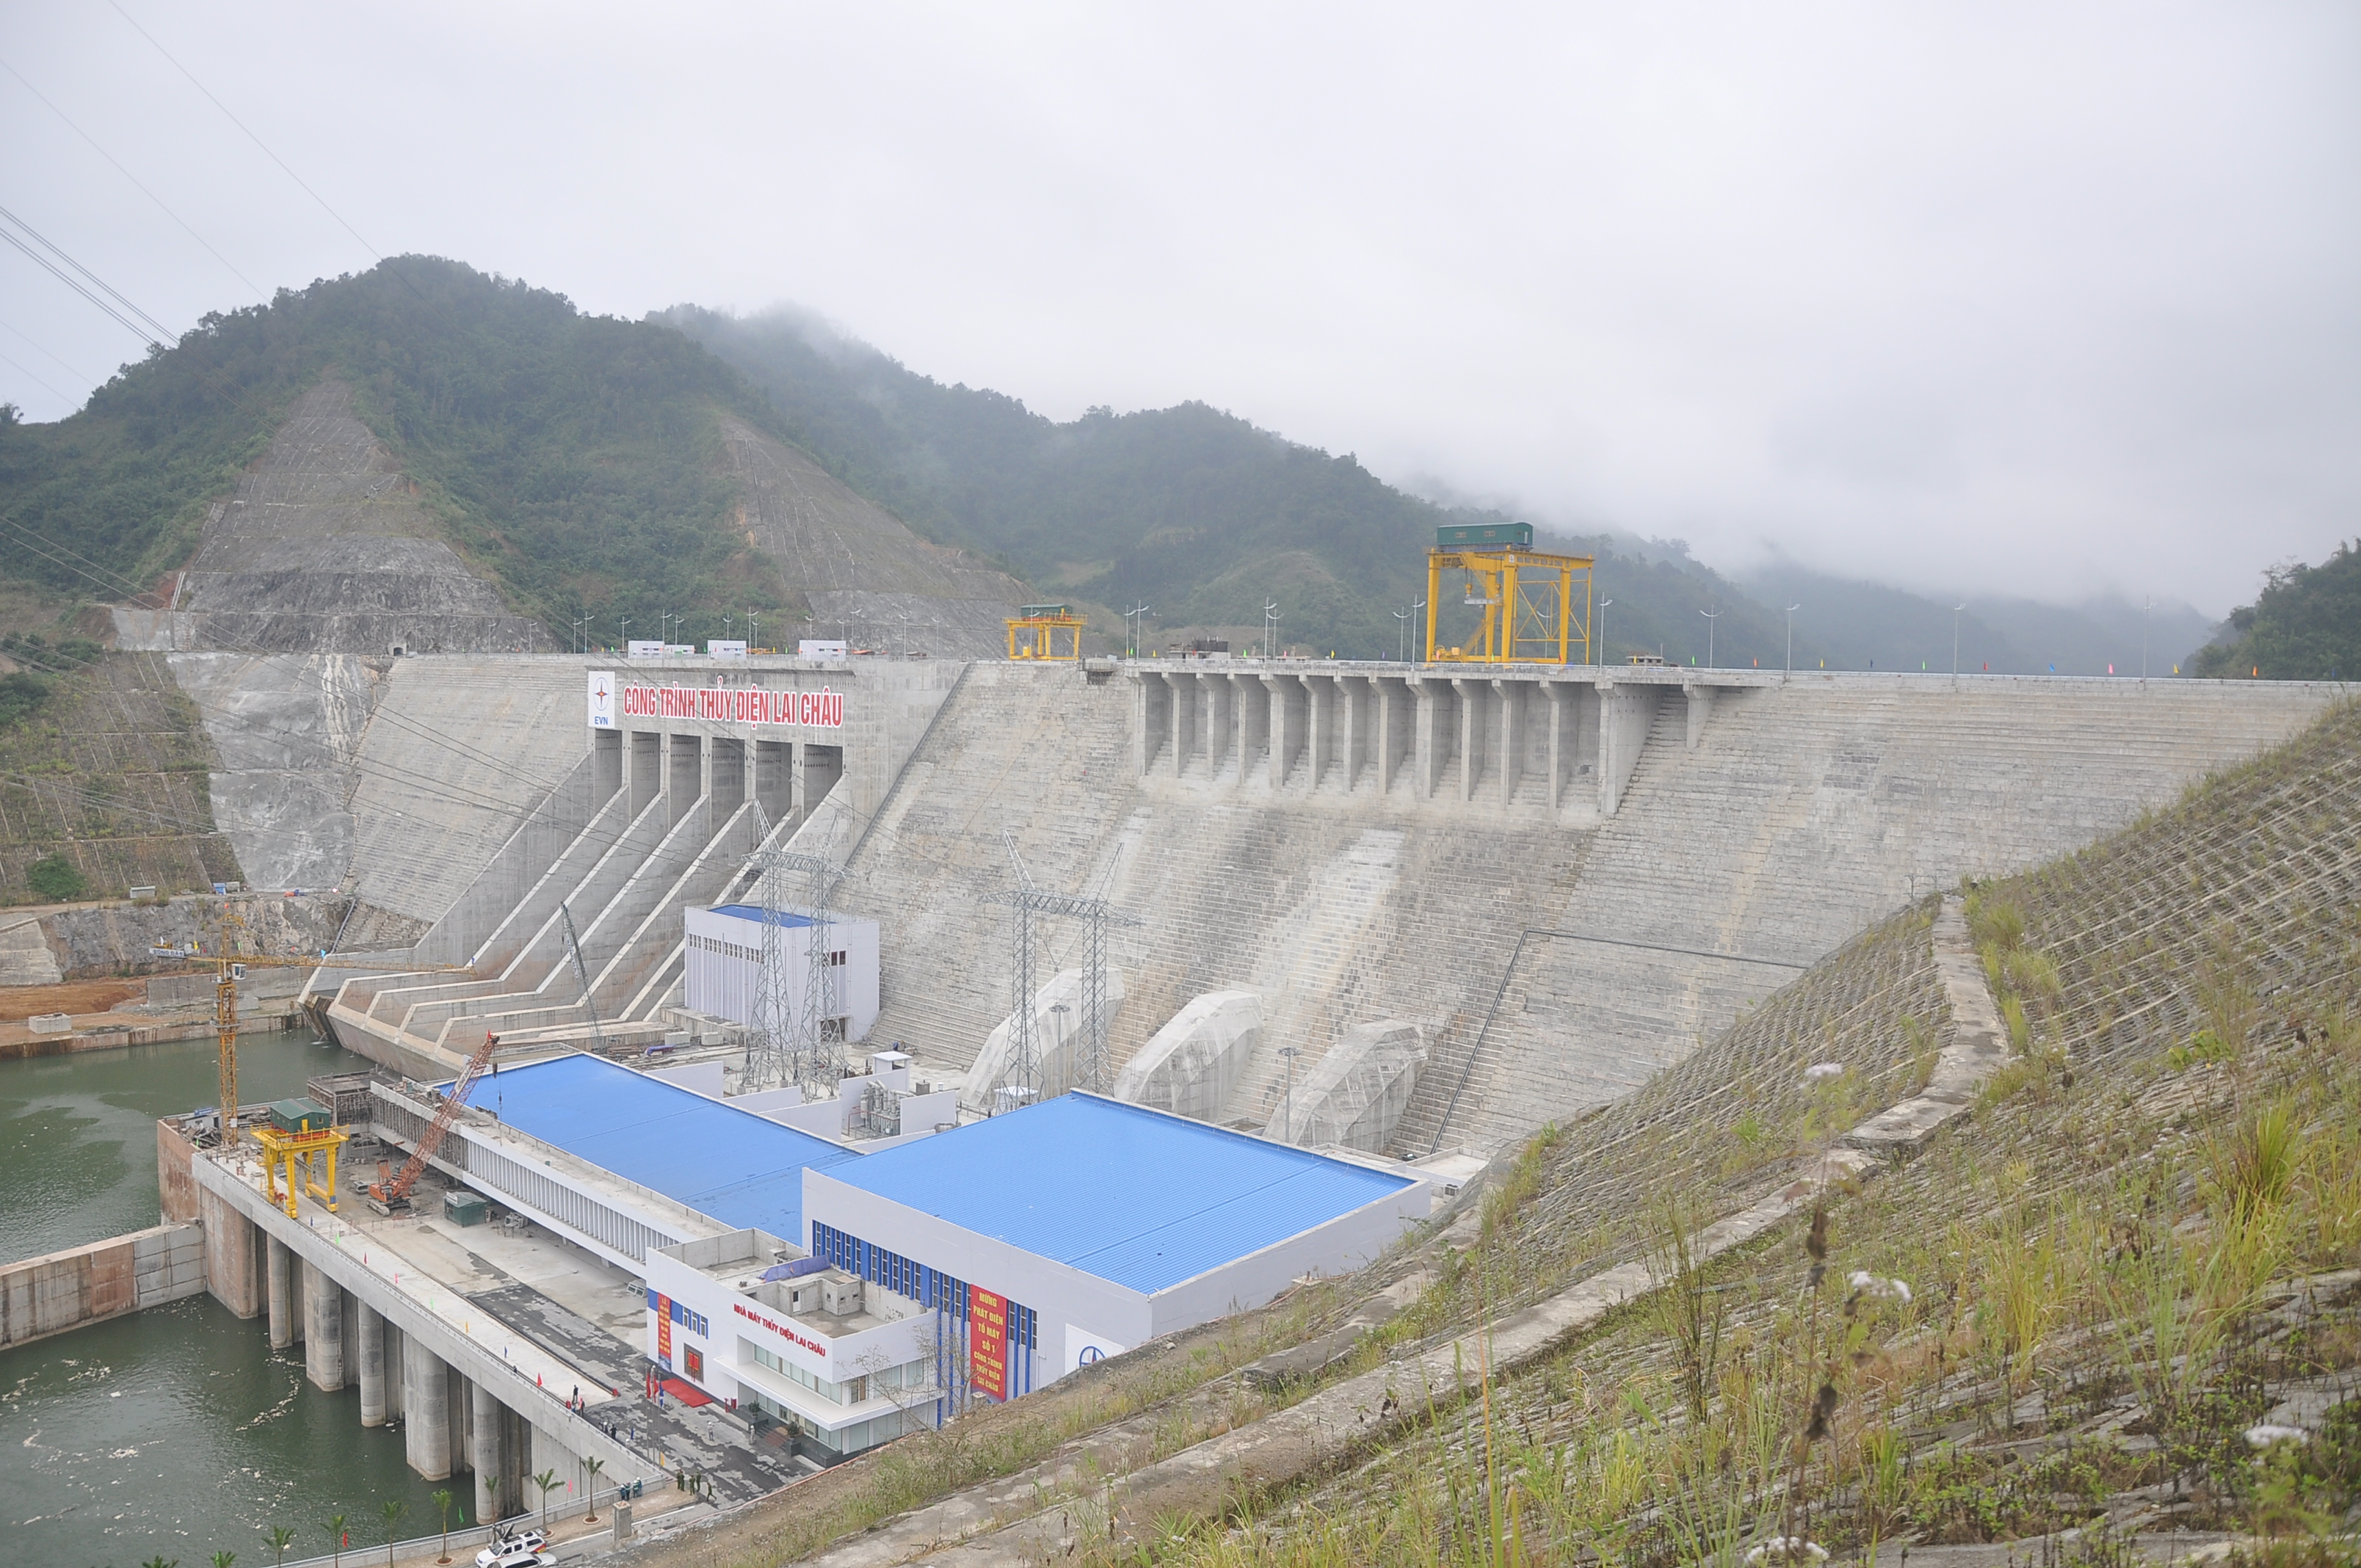 
Toàn cảnh công trình Nhà máy Thủy điện Lai Châu nhìn từ cao trình
